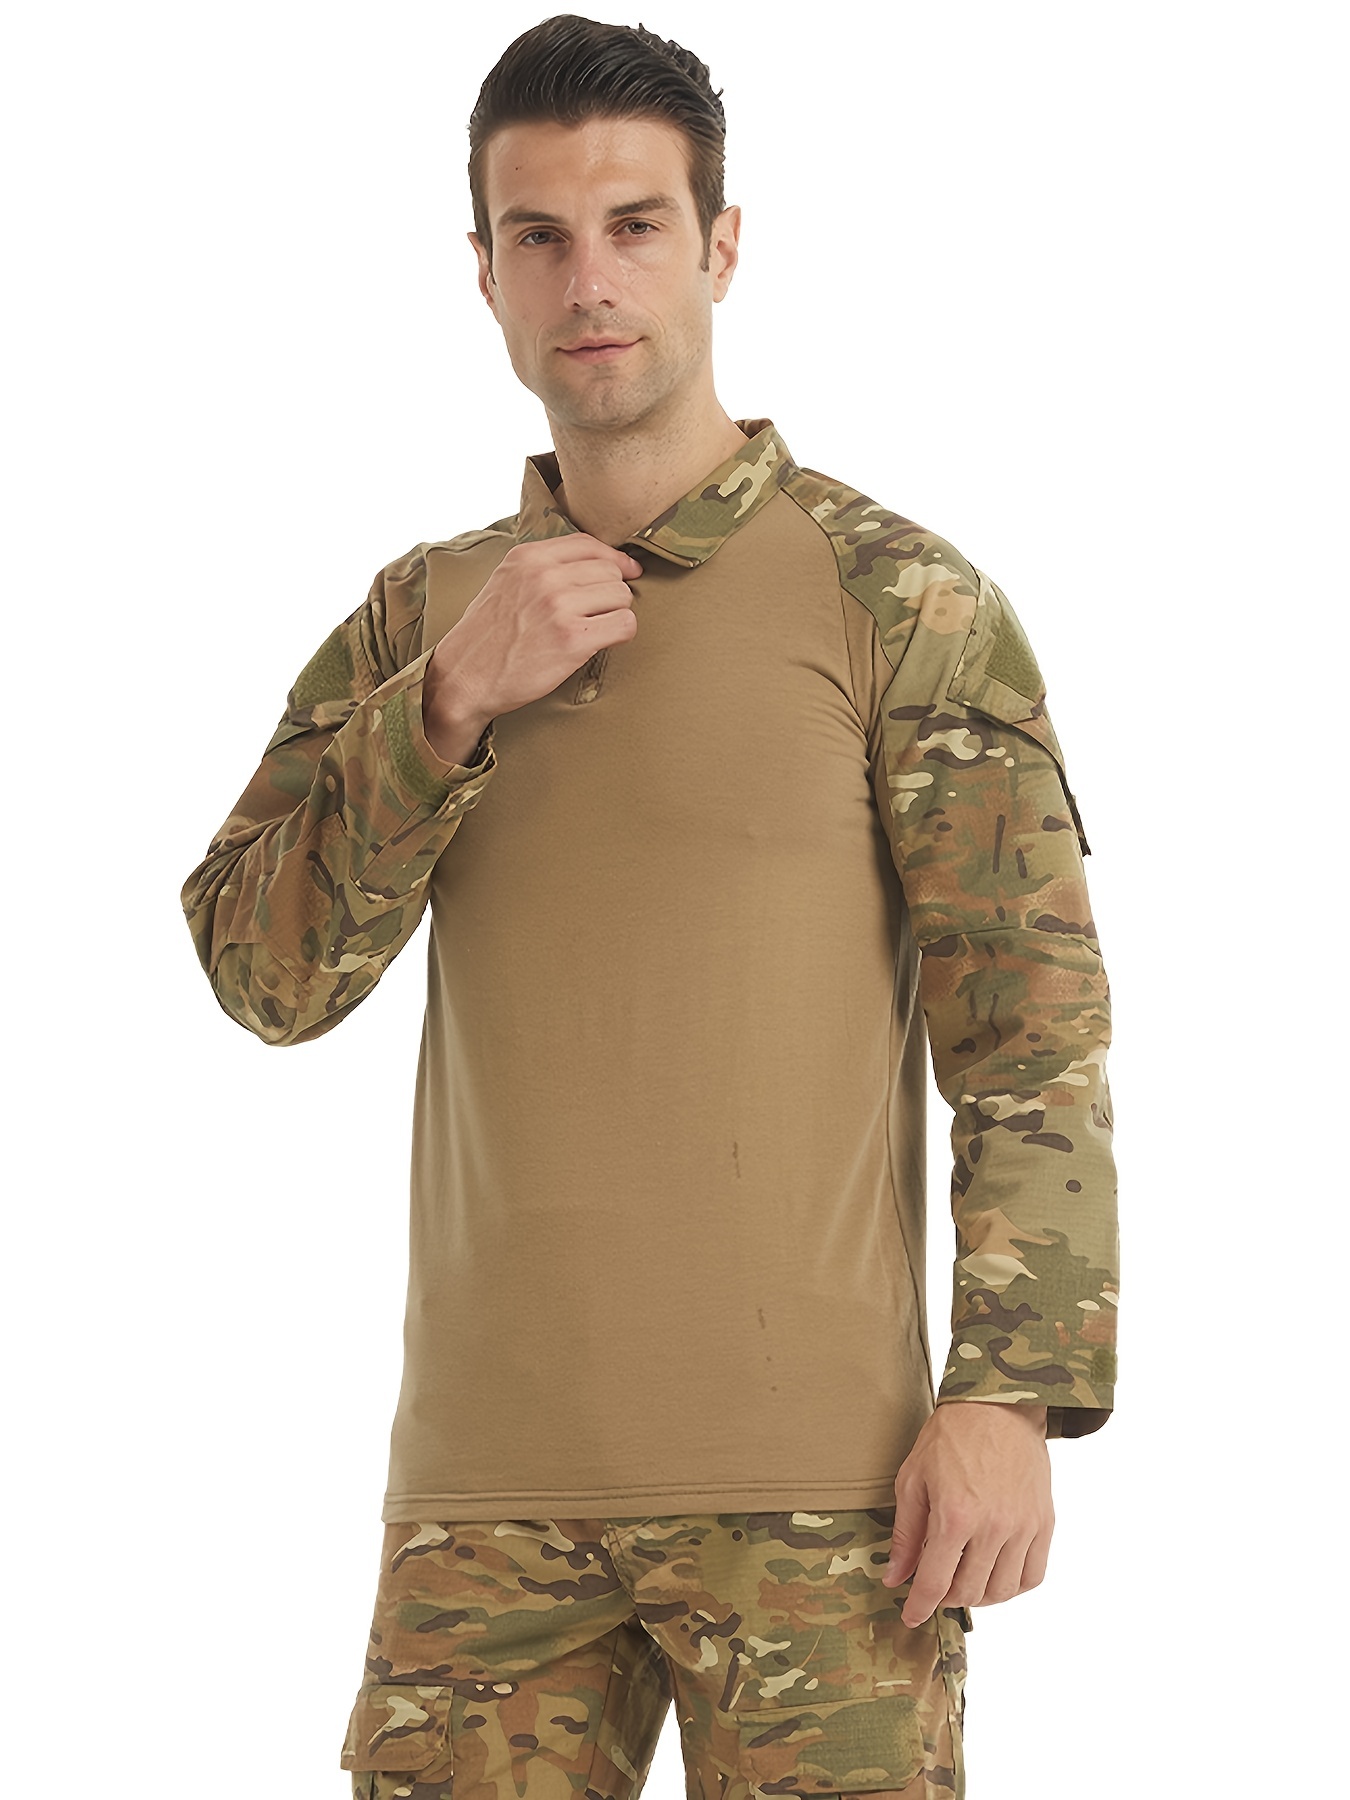 Tactical Shirt Fishing Hoodies Combat Shirt Camo Army Shirts